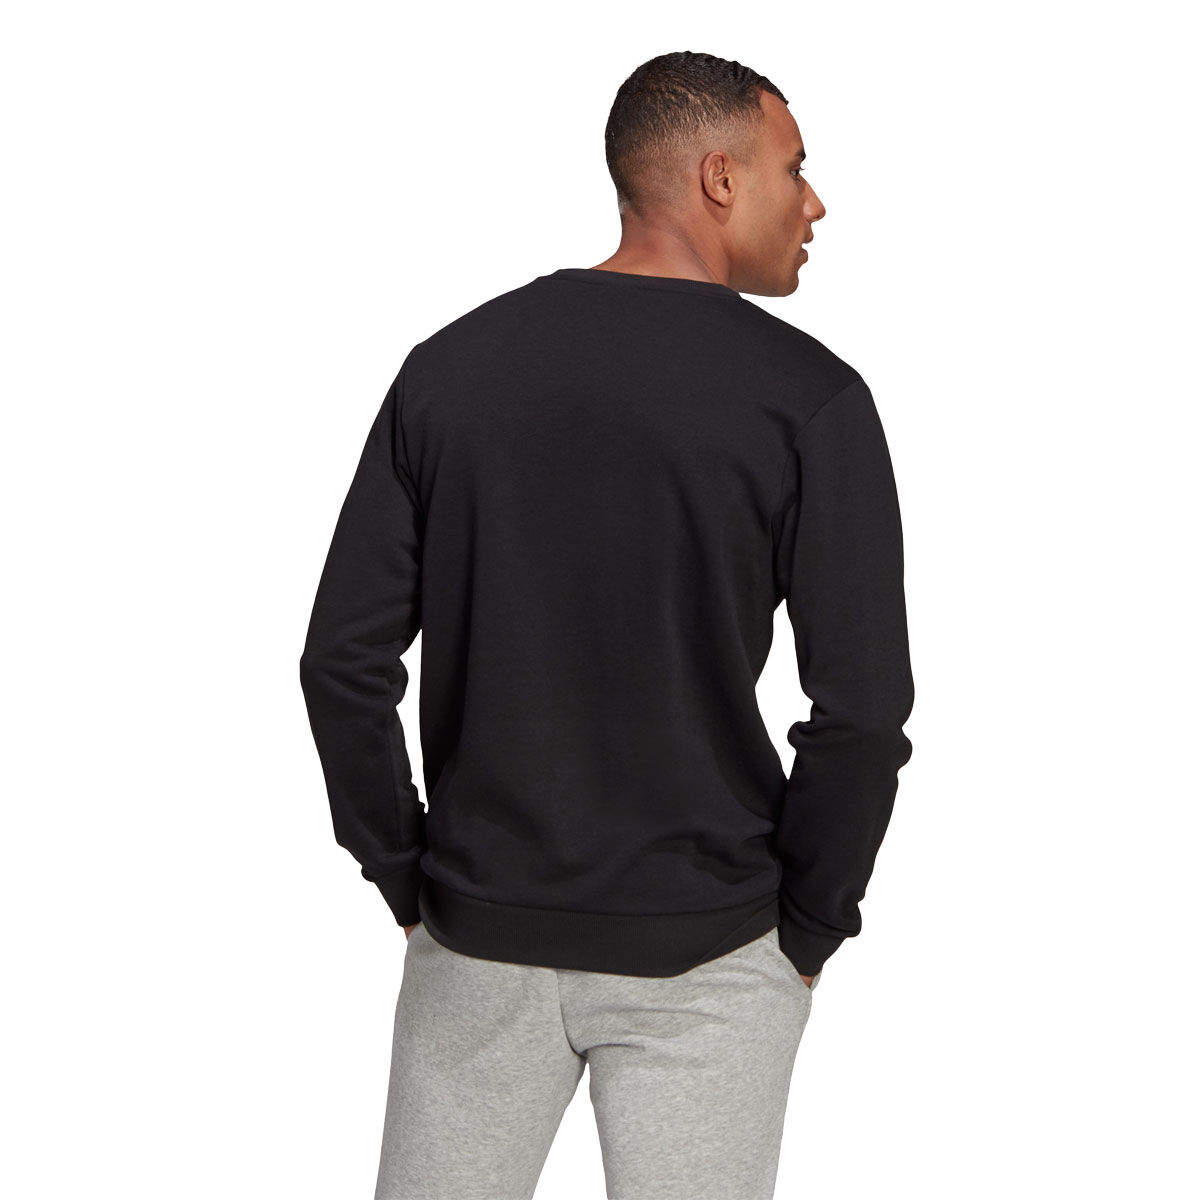 adidas Mens Essentials Big Logo Fleece Crew Sweatshirt Black L, Black, rebel_hi-res